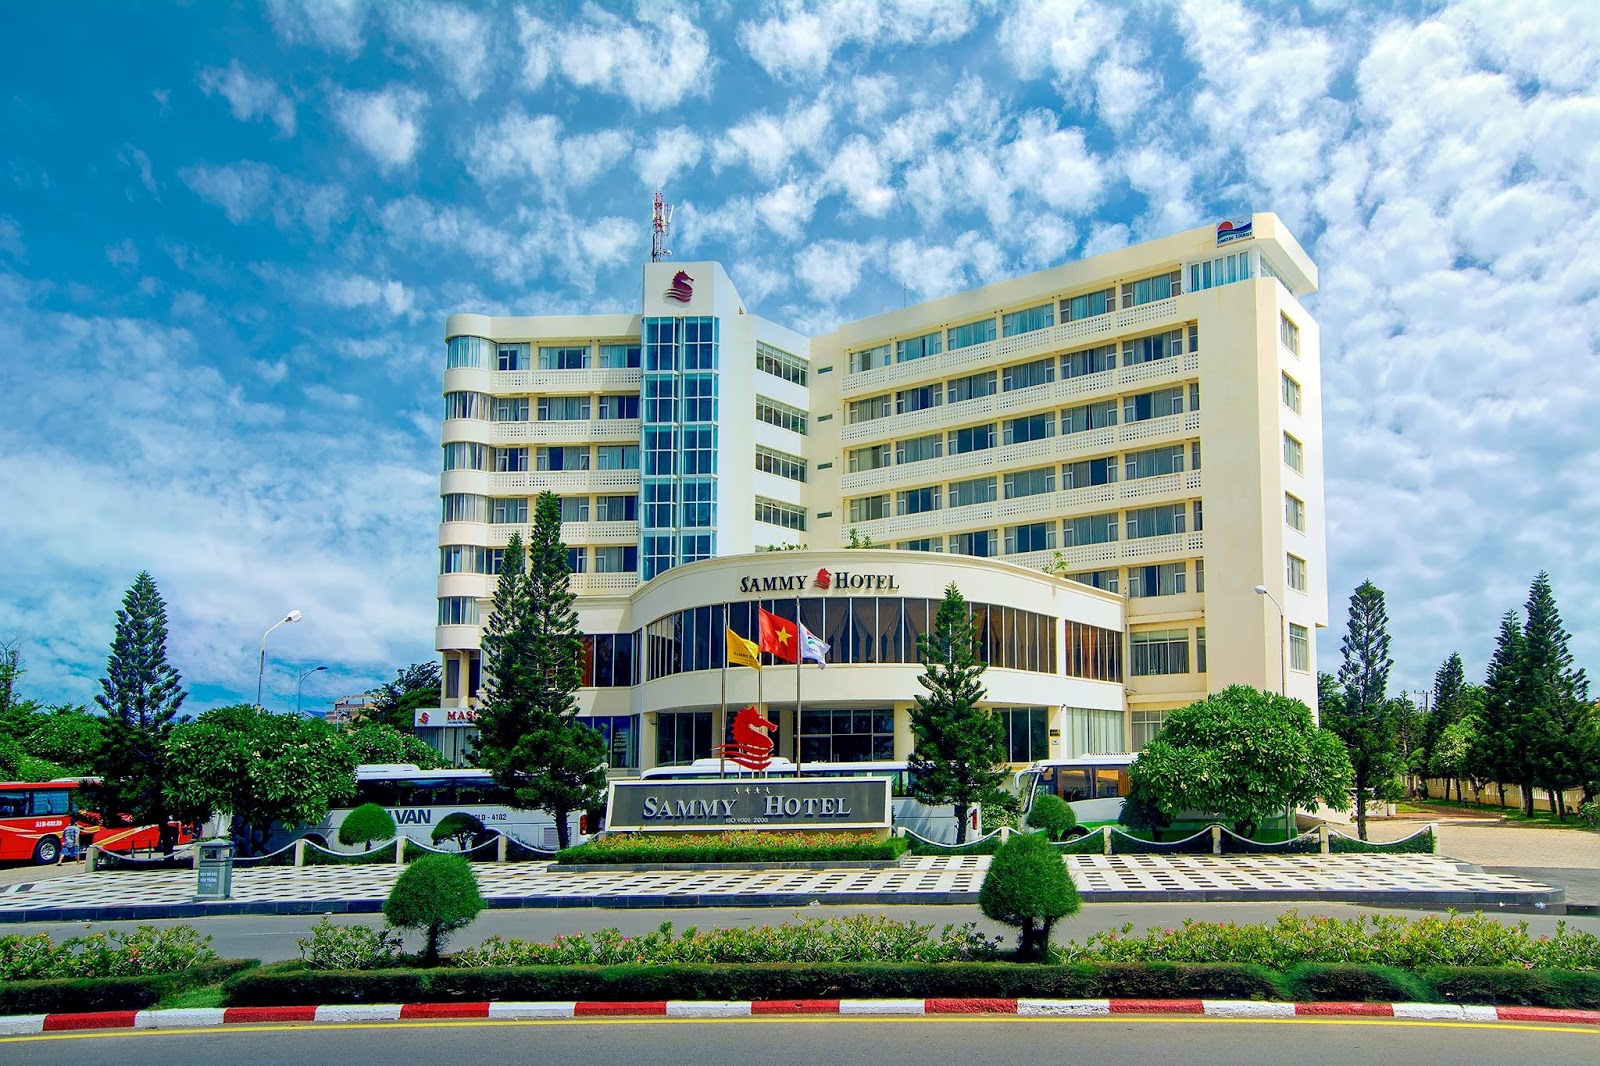 Top 10 Khách sạn Vũng Tàu đường Thùy Vân view biển tốt nhất